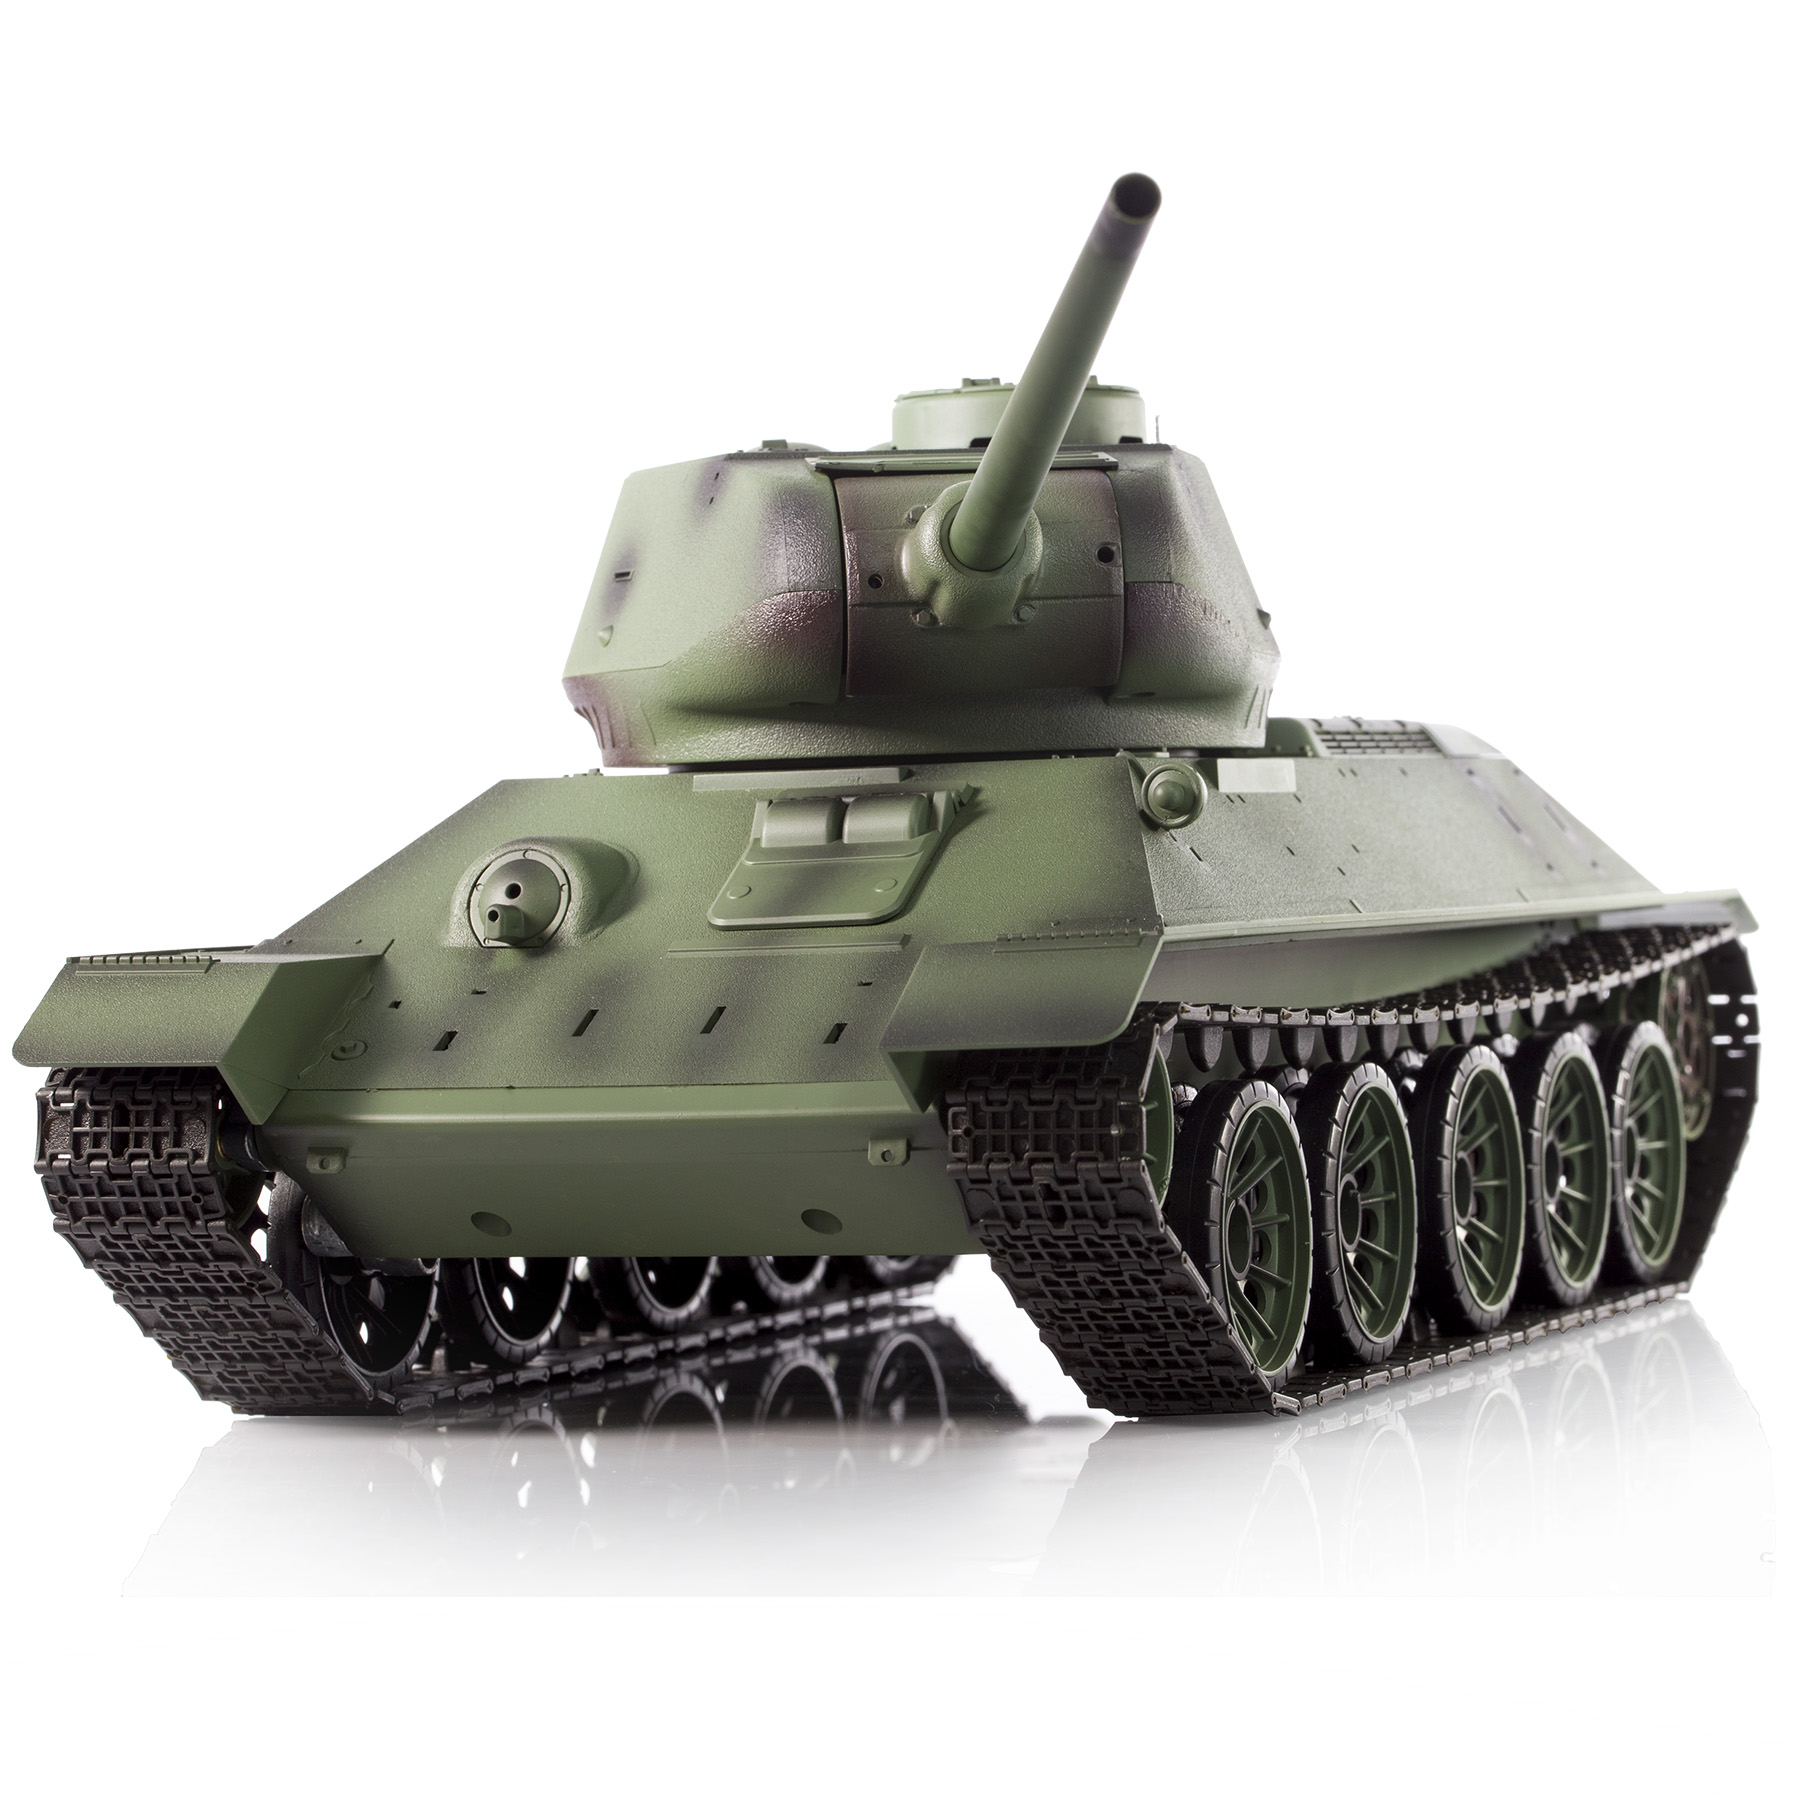 Радиоуправляемый танк Heng Long Russia T34-85 масштаб 1:16 2.4G - 3909-1 v7.0